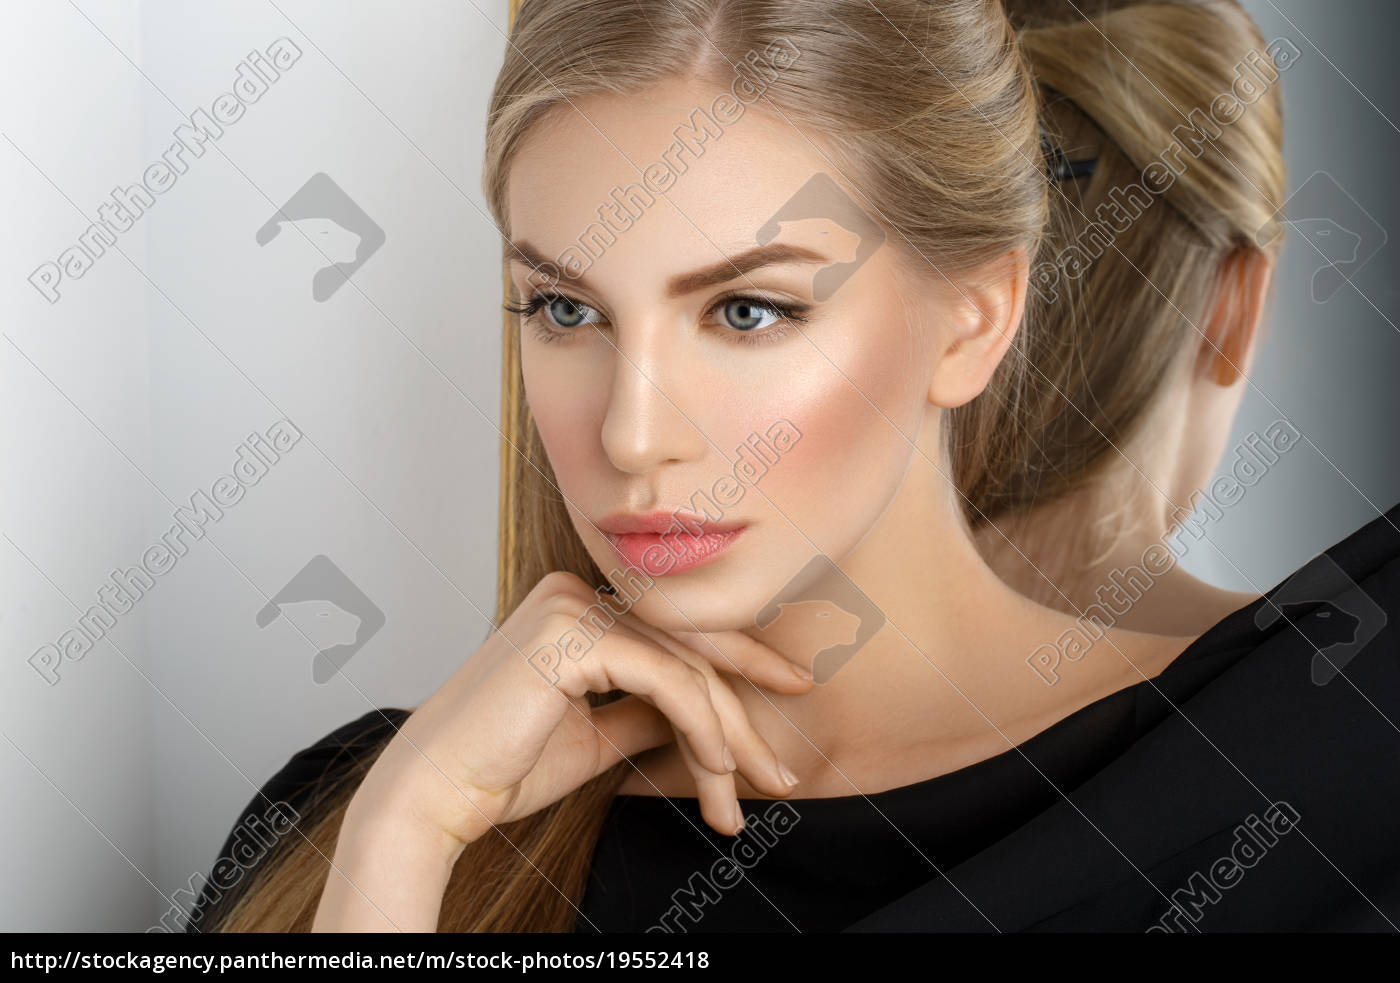 Beautiful Girl With Makeup Stock Image 19552418